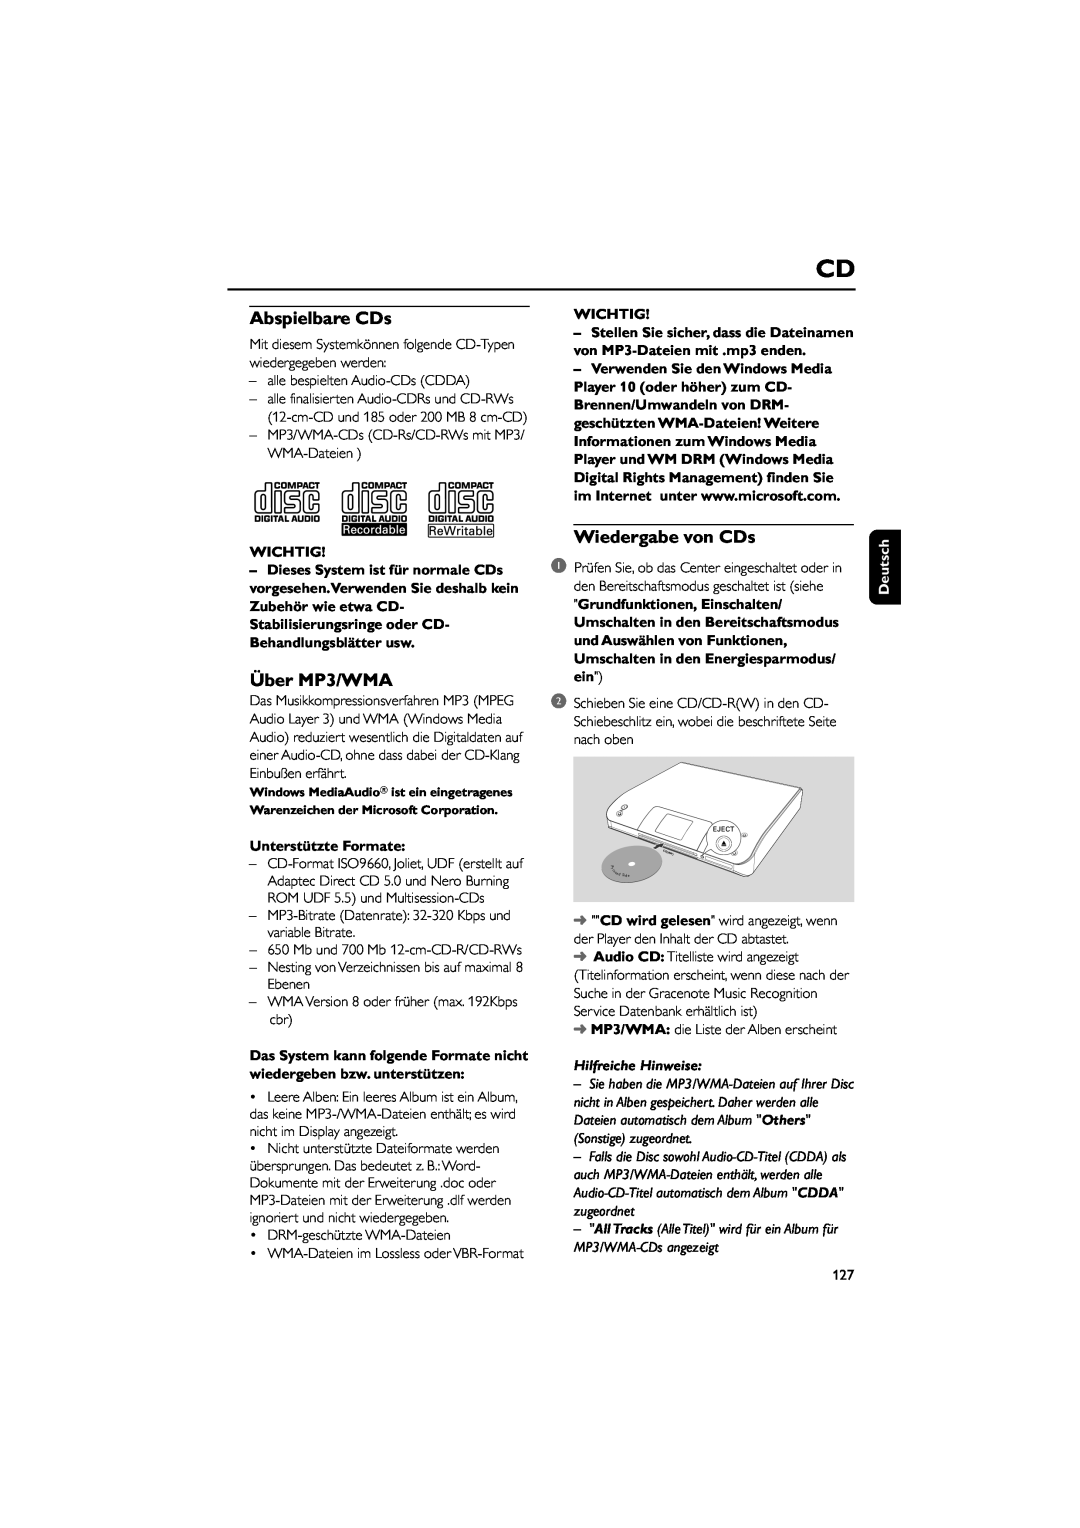 Philips WAC5 Abspielbare CDs, Über MP3/WMA, Wiedergabe von CDs, Wichtig, Unterstützte Formate, Hilfreiche Hinweise 